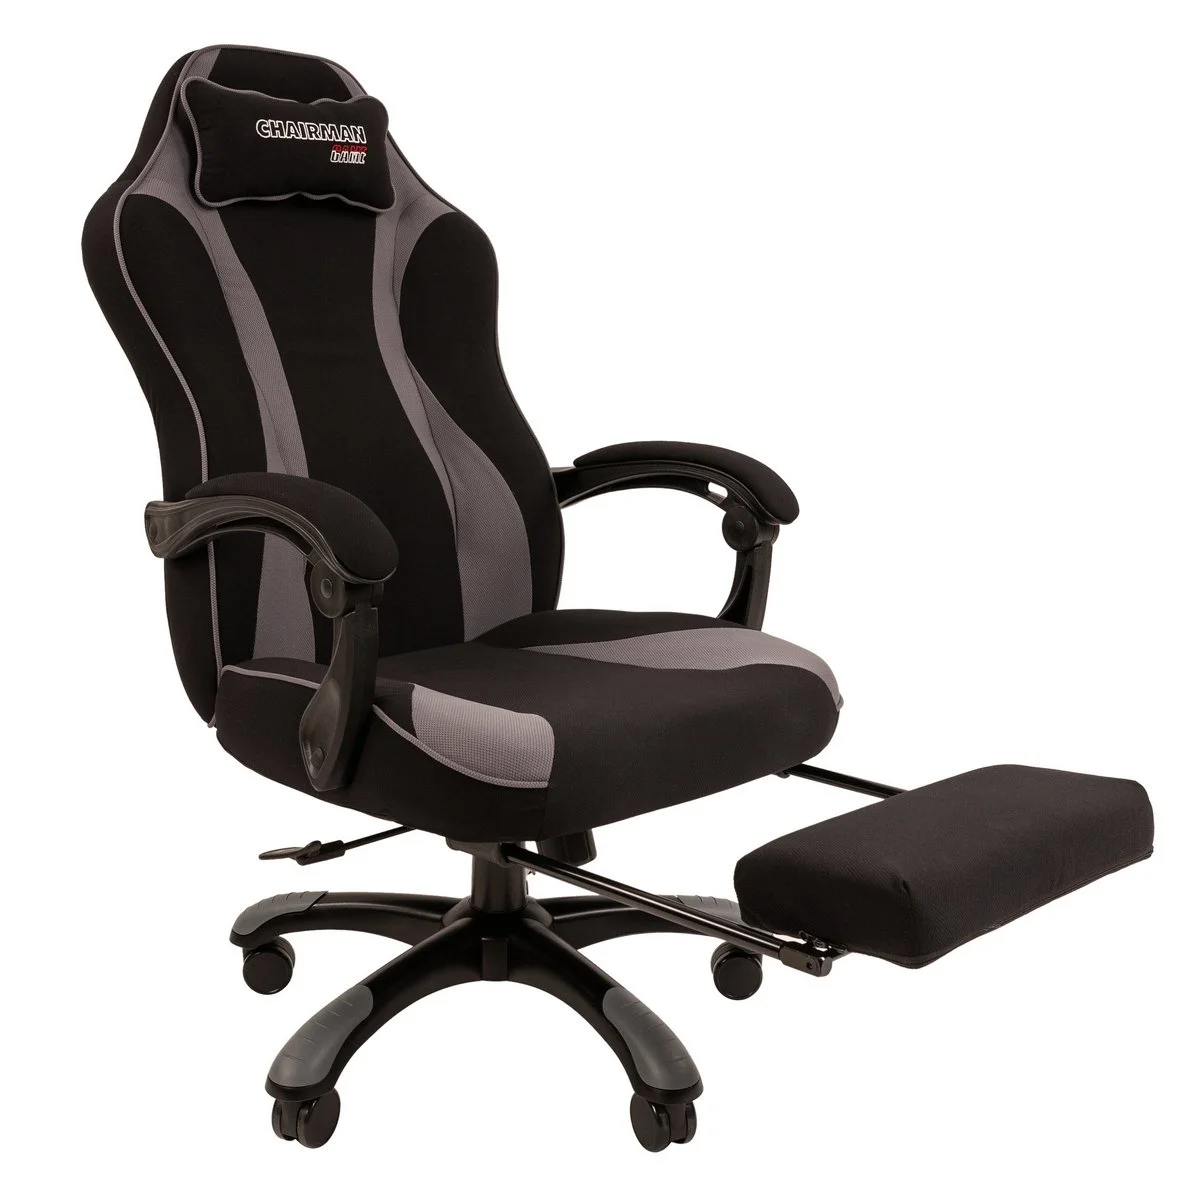 Геймерское компьютерное кресло CHAIRMAN GAME 35, ткань, черный/серый